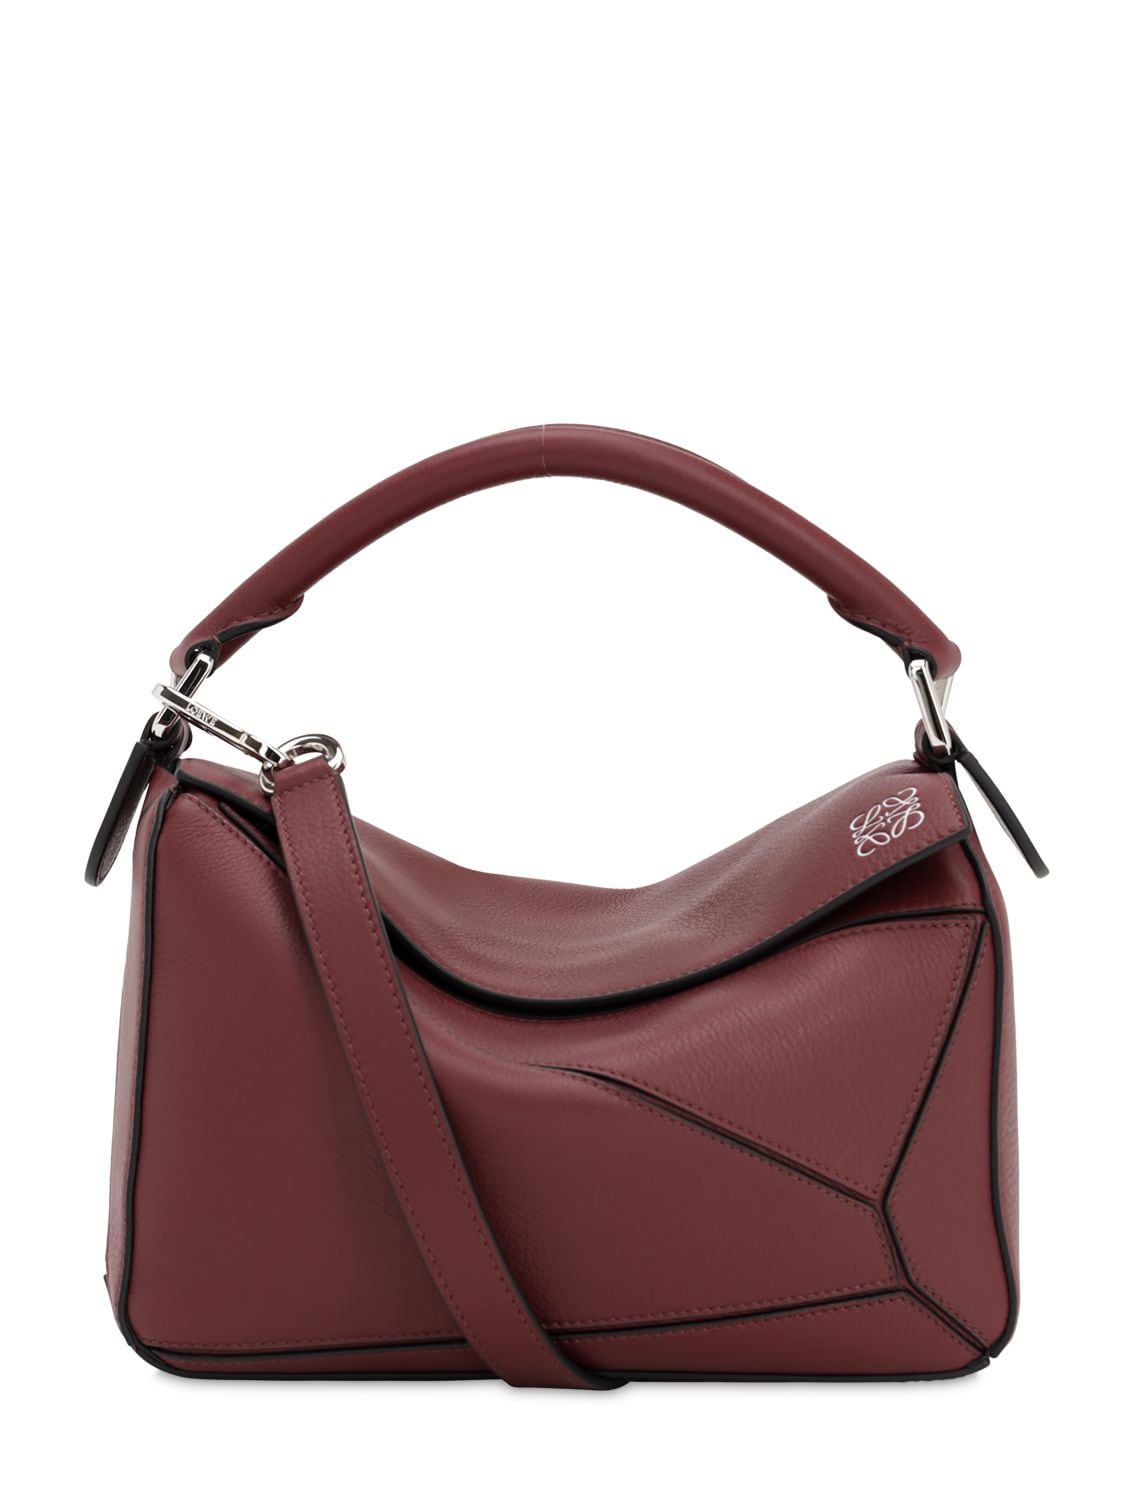 Loewe Leather Tri-color a 28 Hand Bag Pink Bordeaux Women Excellent  M1586